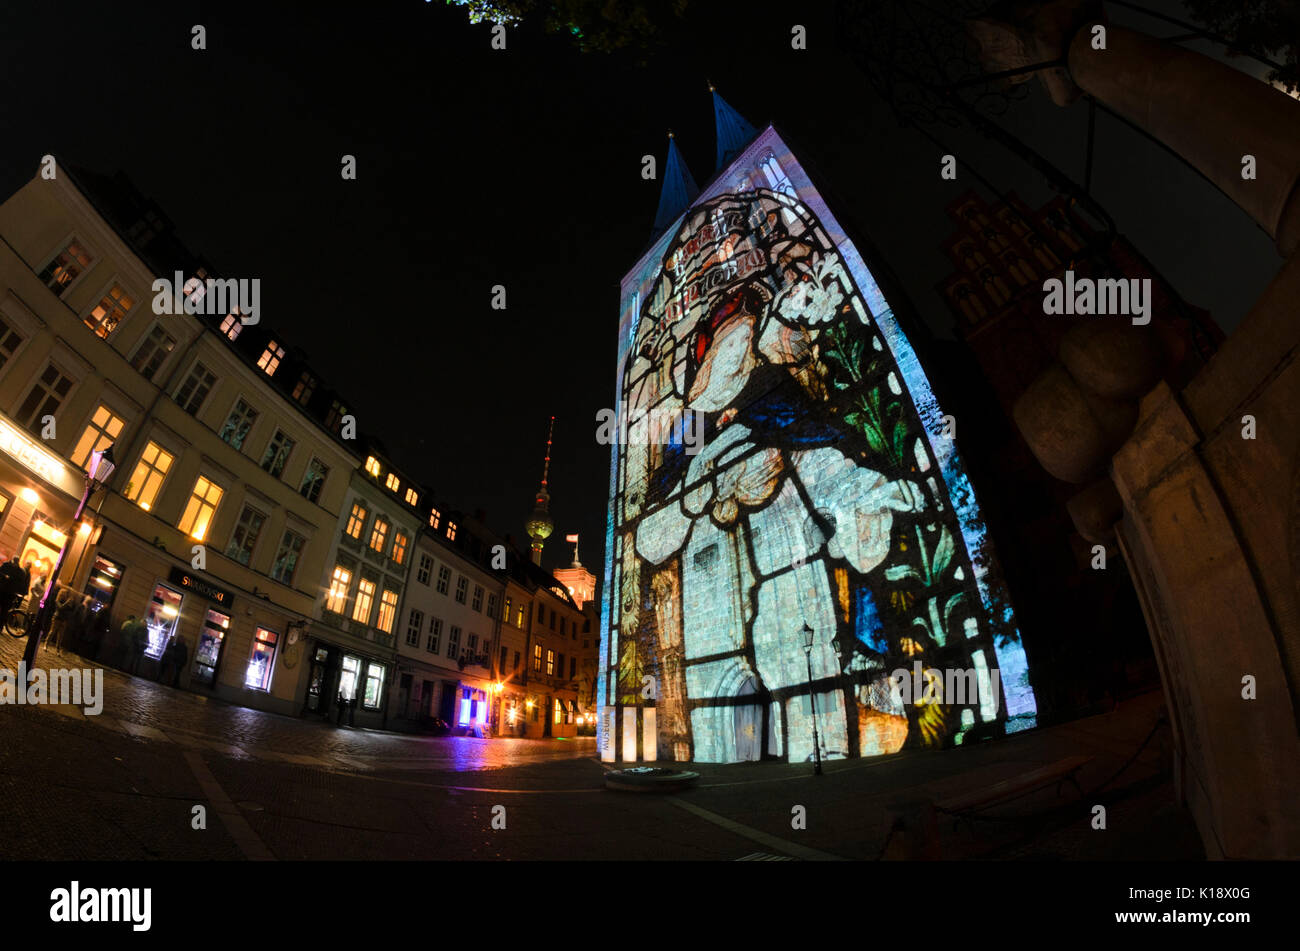 Light projection on Nikolaikirche, Berlin, Germany Stock Photo